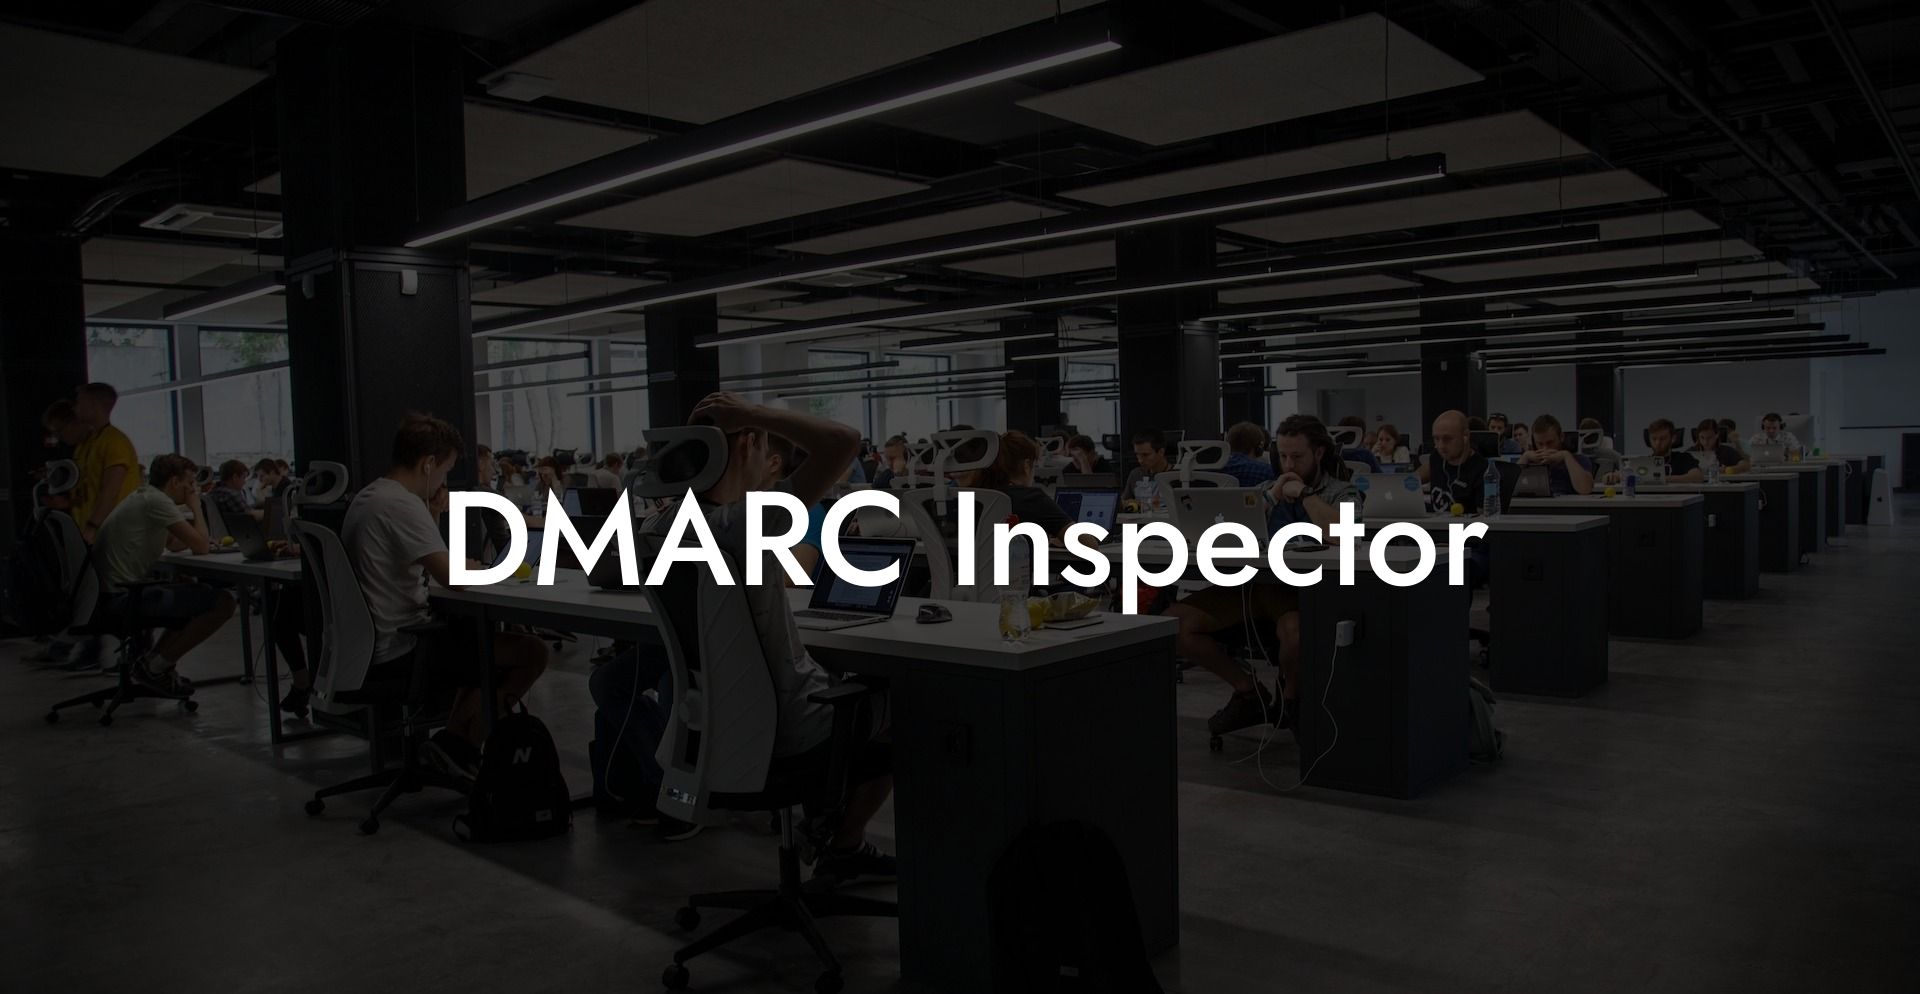 DMARC Inspector